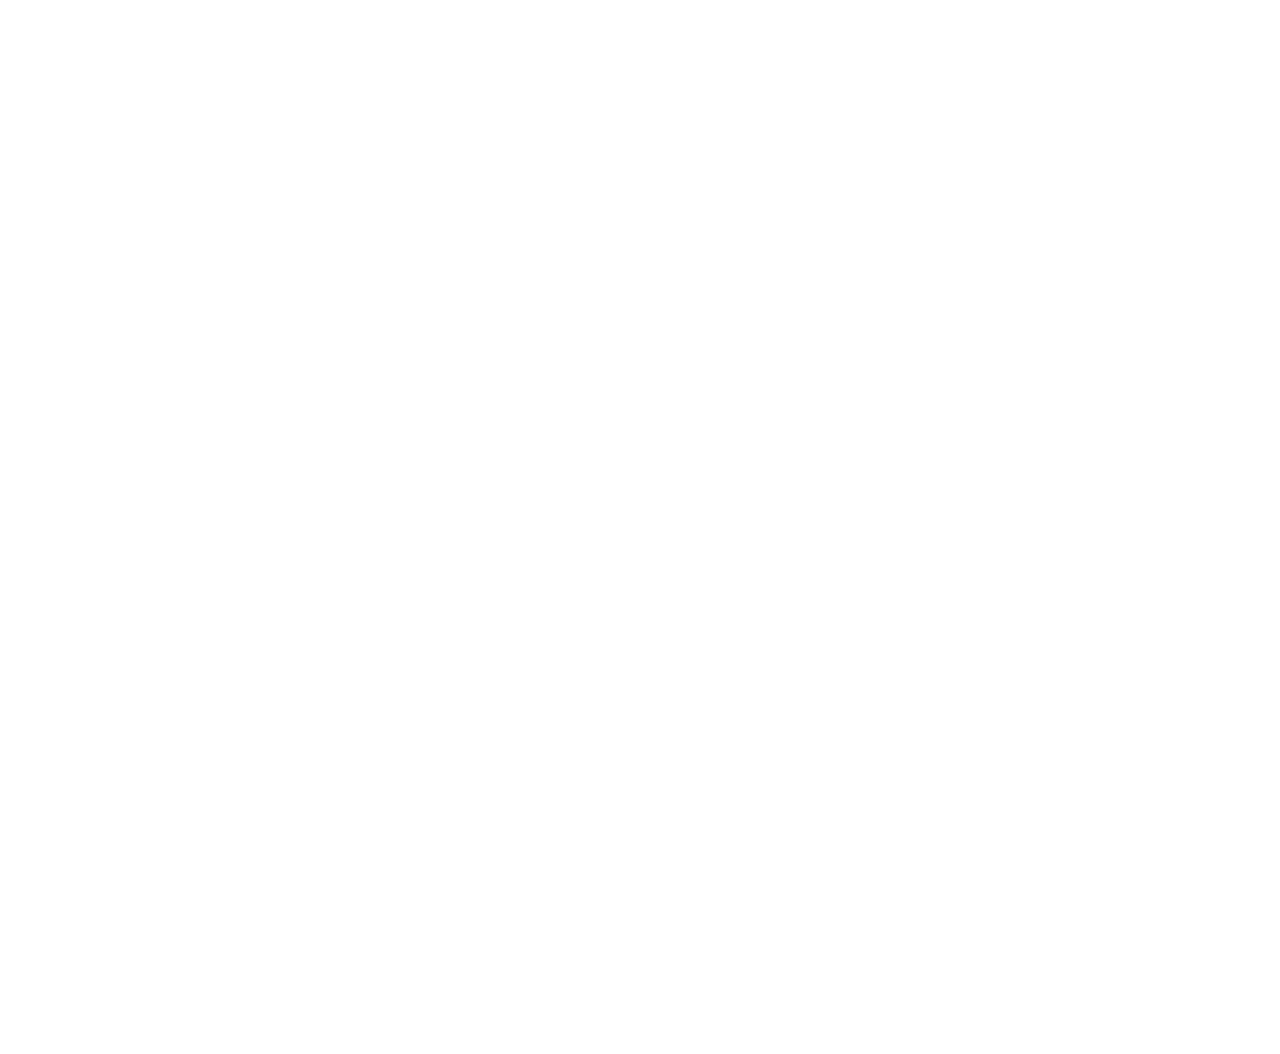 NeoPhoto's logo